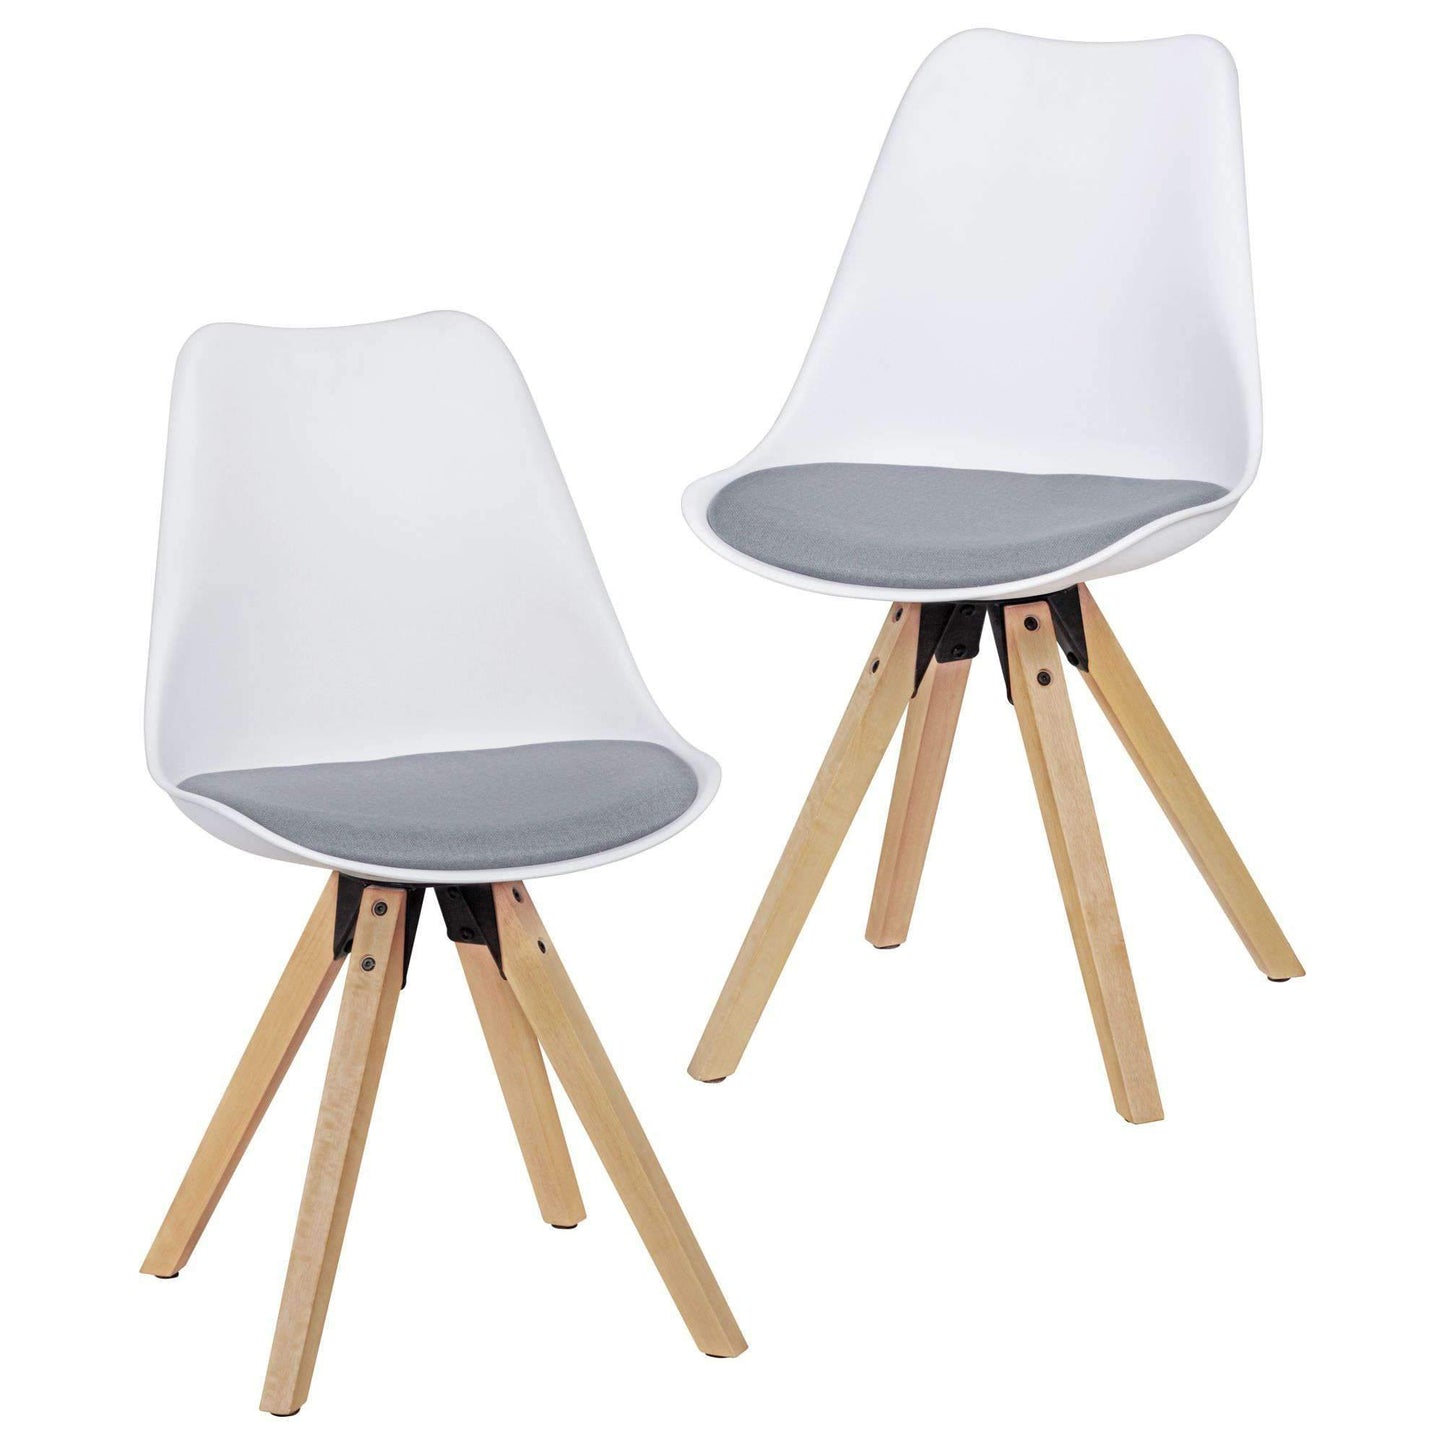 Ensemble rétro en bois de Nancy de 2 chaises de salle à manger - Chaise de salle à manger - Chaise de salle à manger - Chaise seau